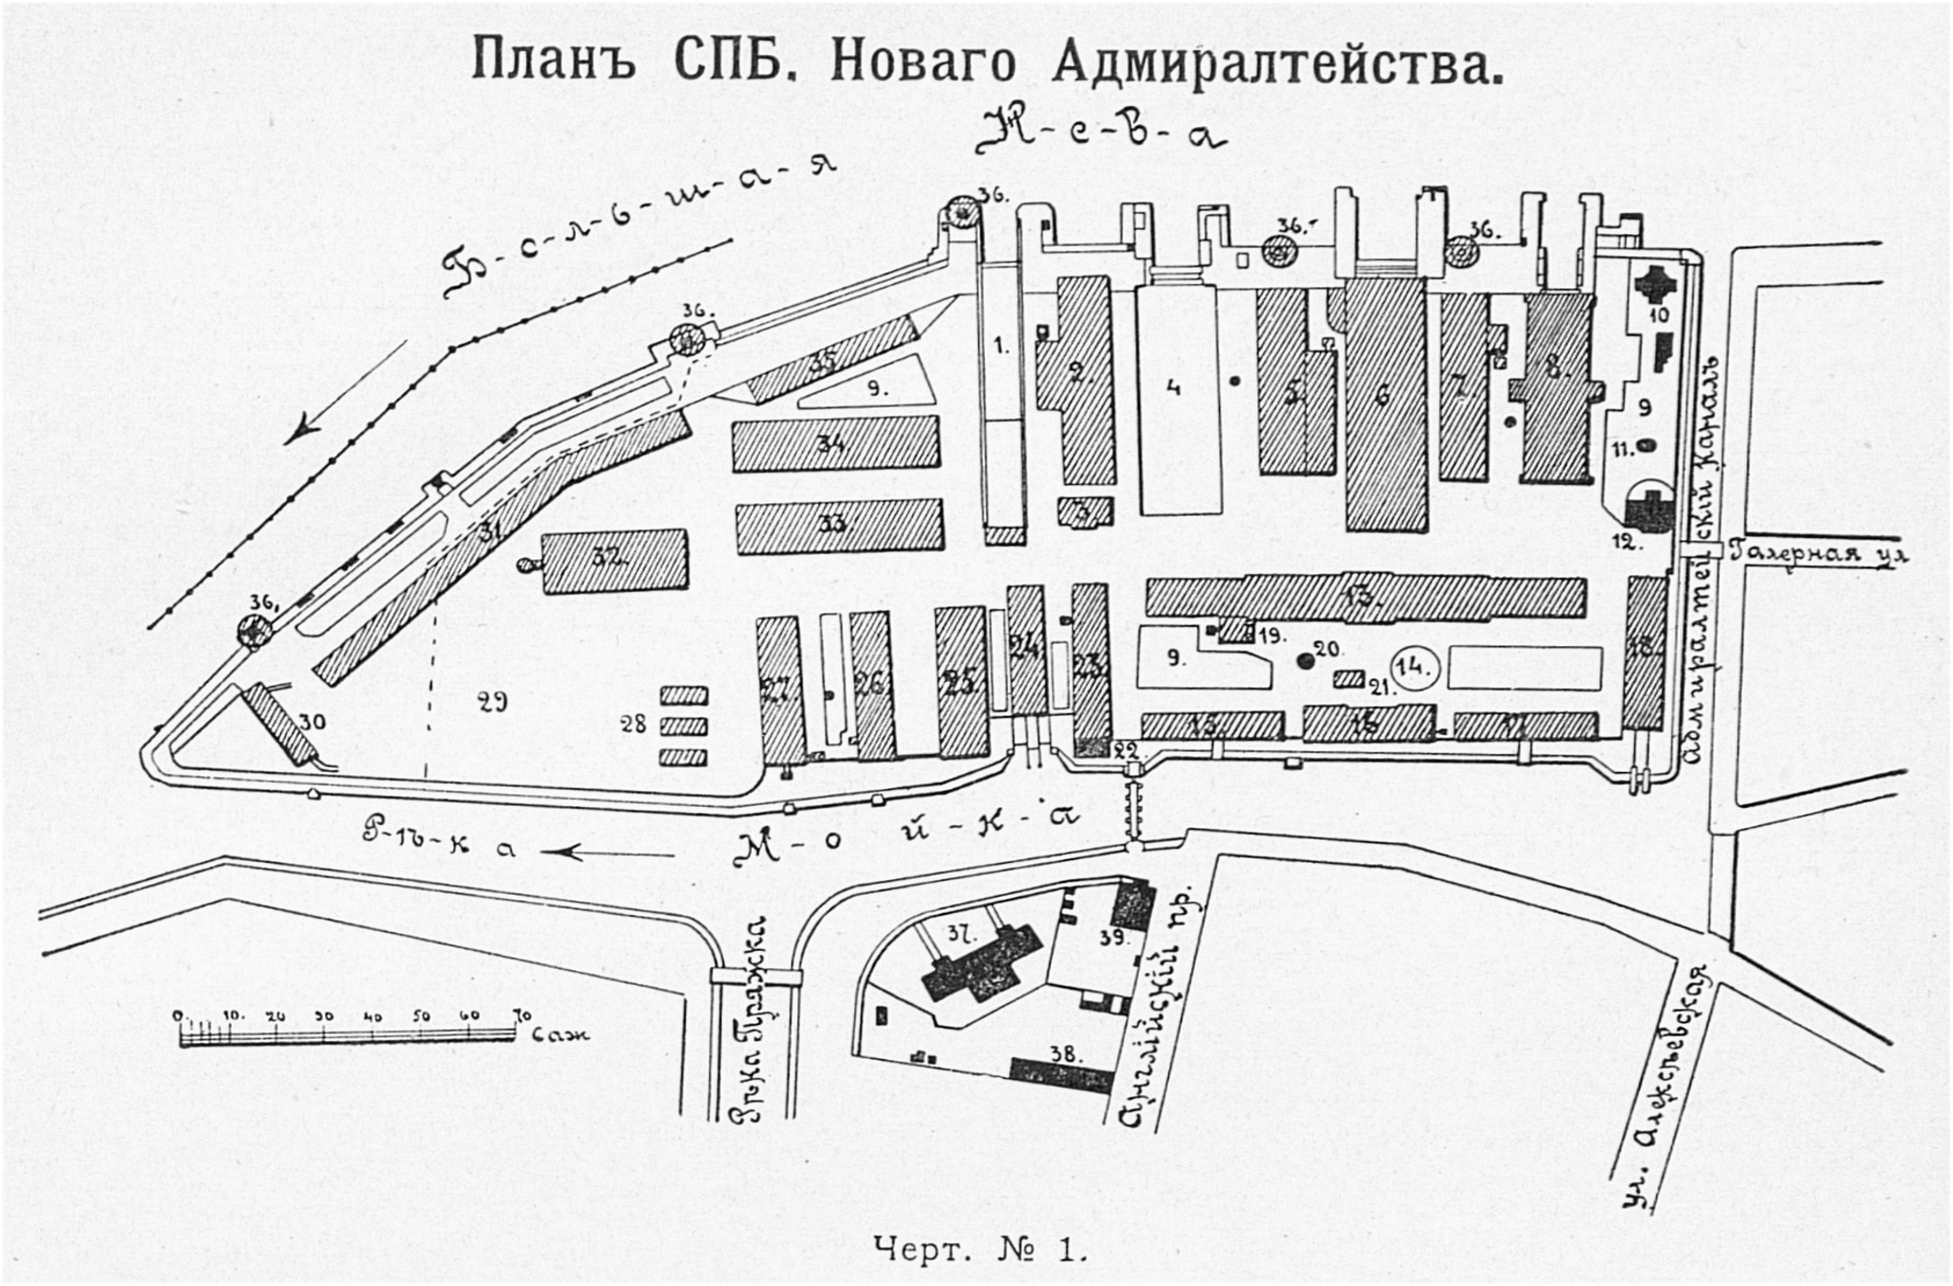 Карта: Санкт-Петербургское Новое Адмиралтейство